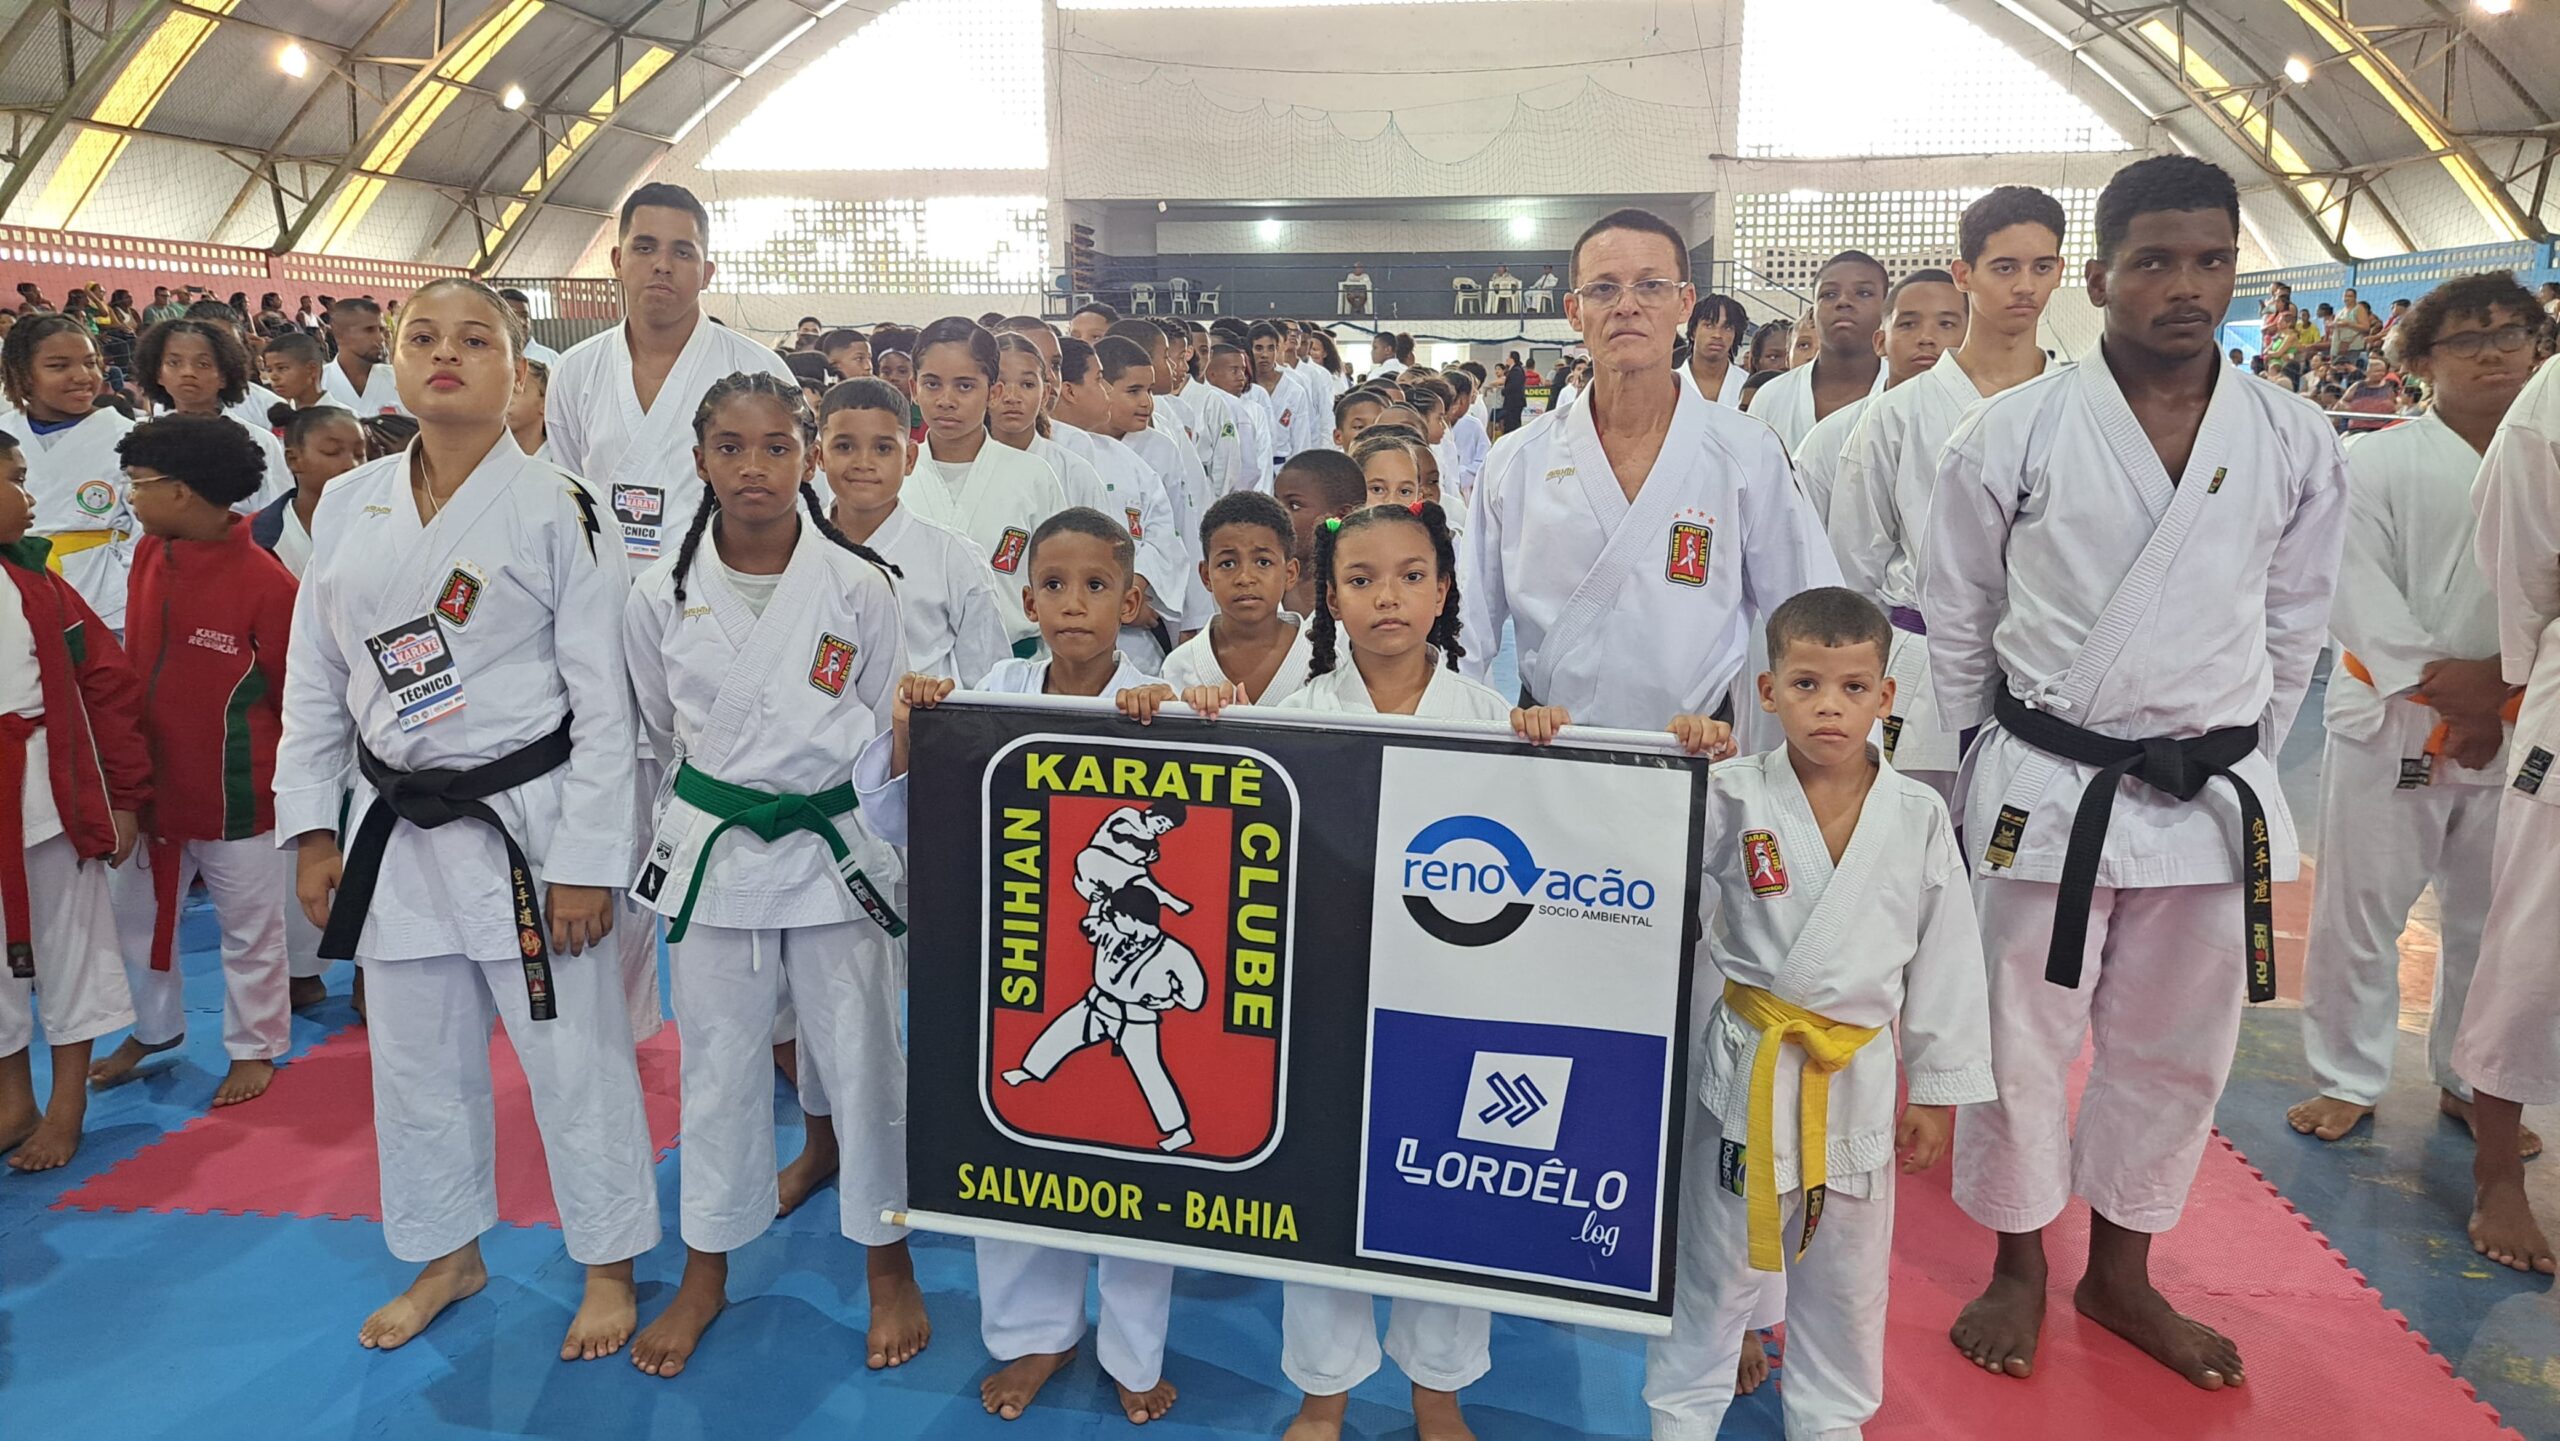 Tetra Campeão: Shihan Karatê Clube conquista título baiano em Candeias